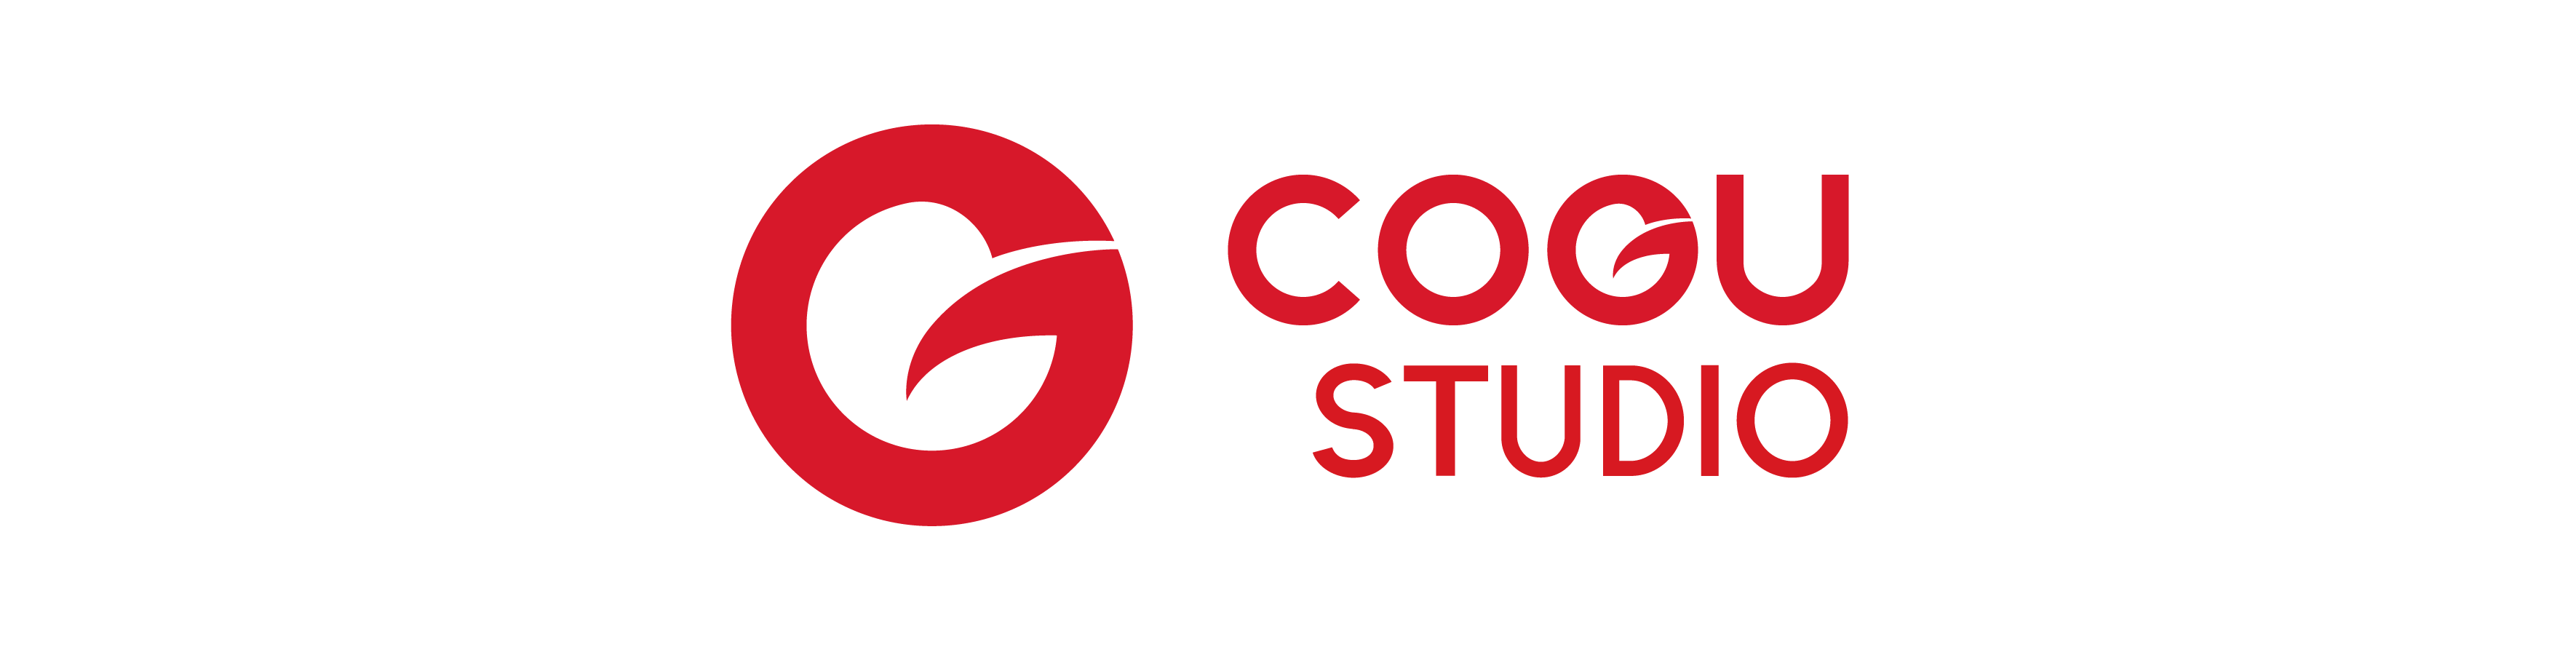 COGU STUDIO